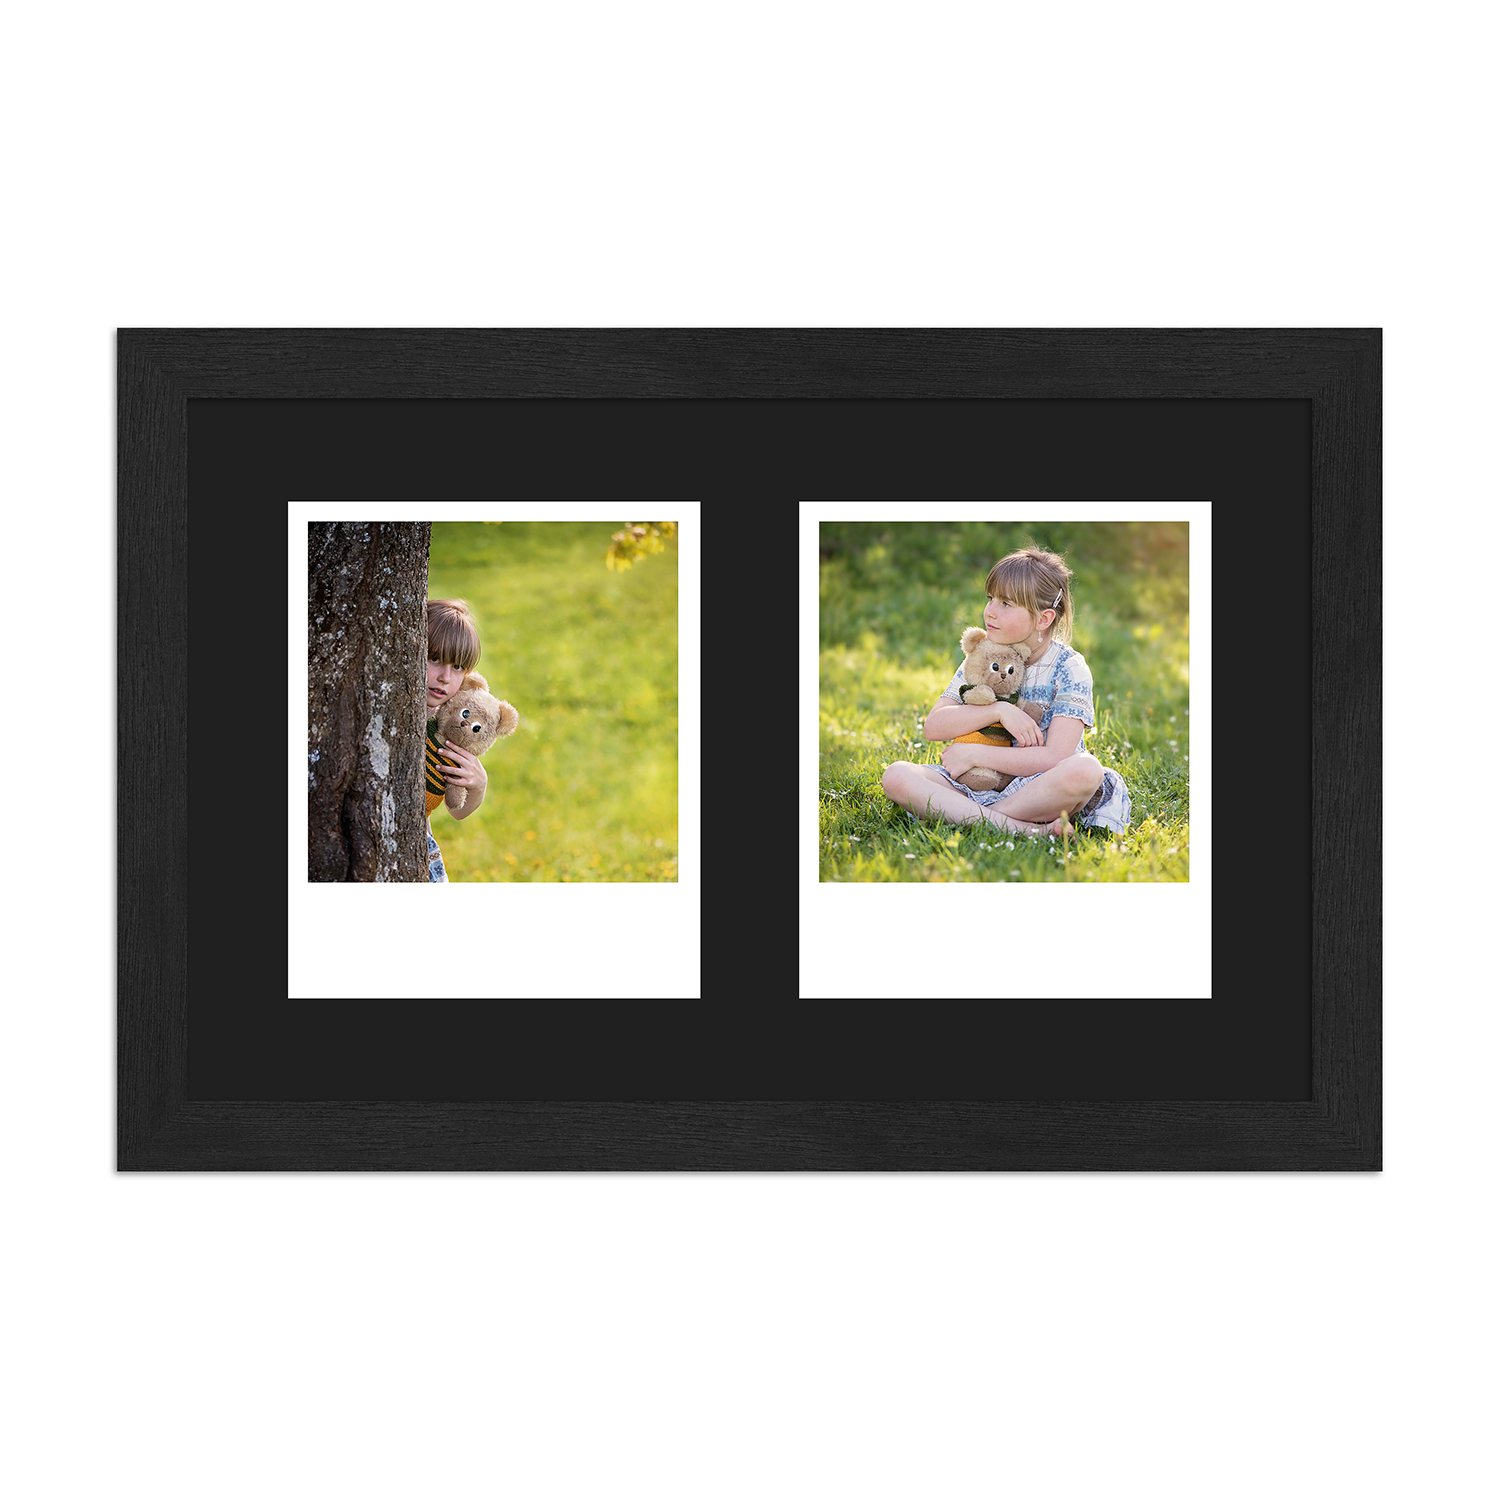 Polaroid Bilderrahmen H950 mit Passepartout schwarz für 2 Ausschnitte